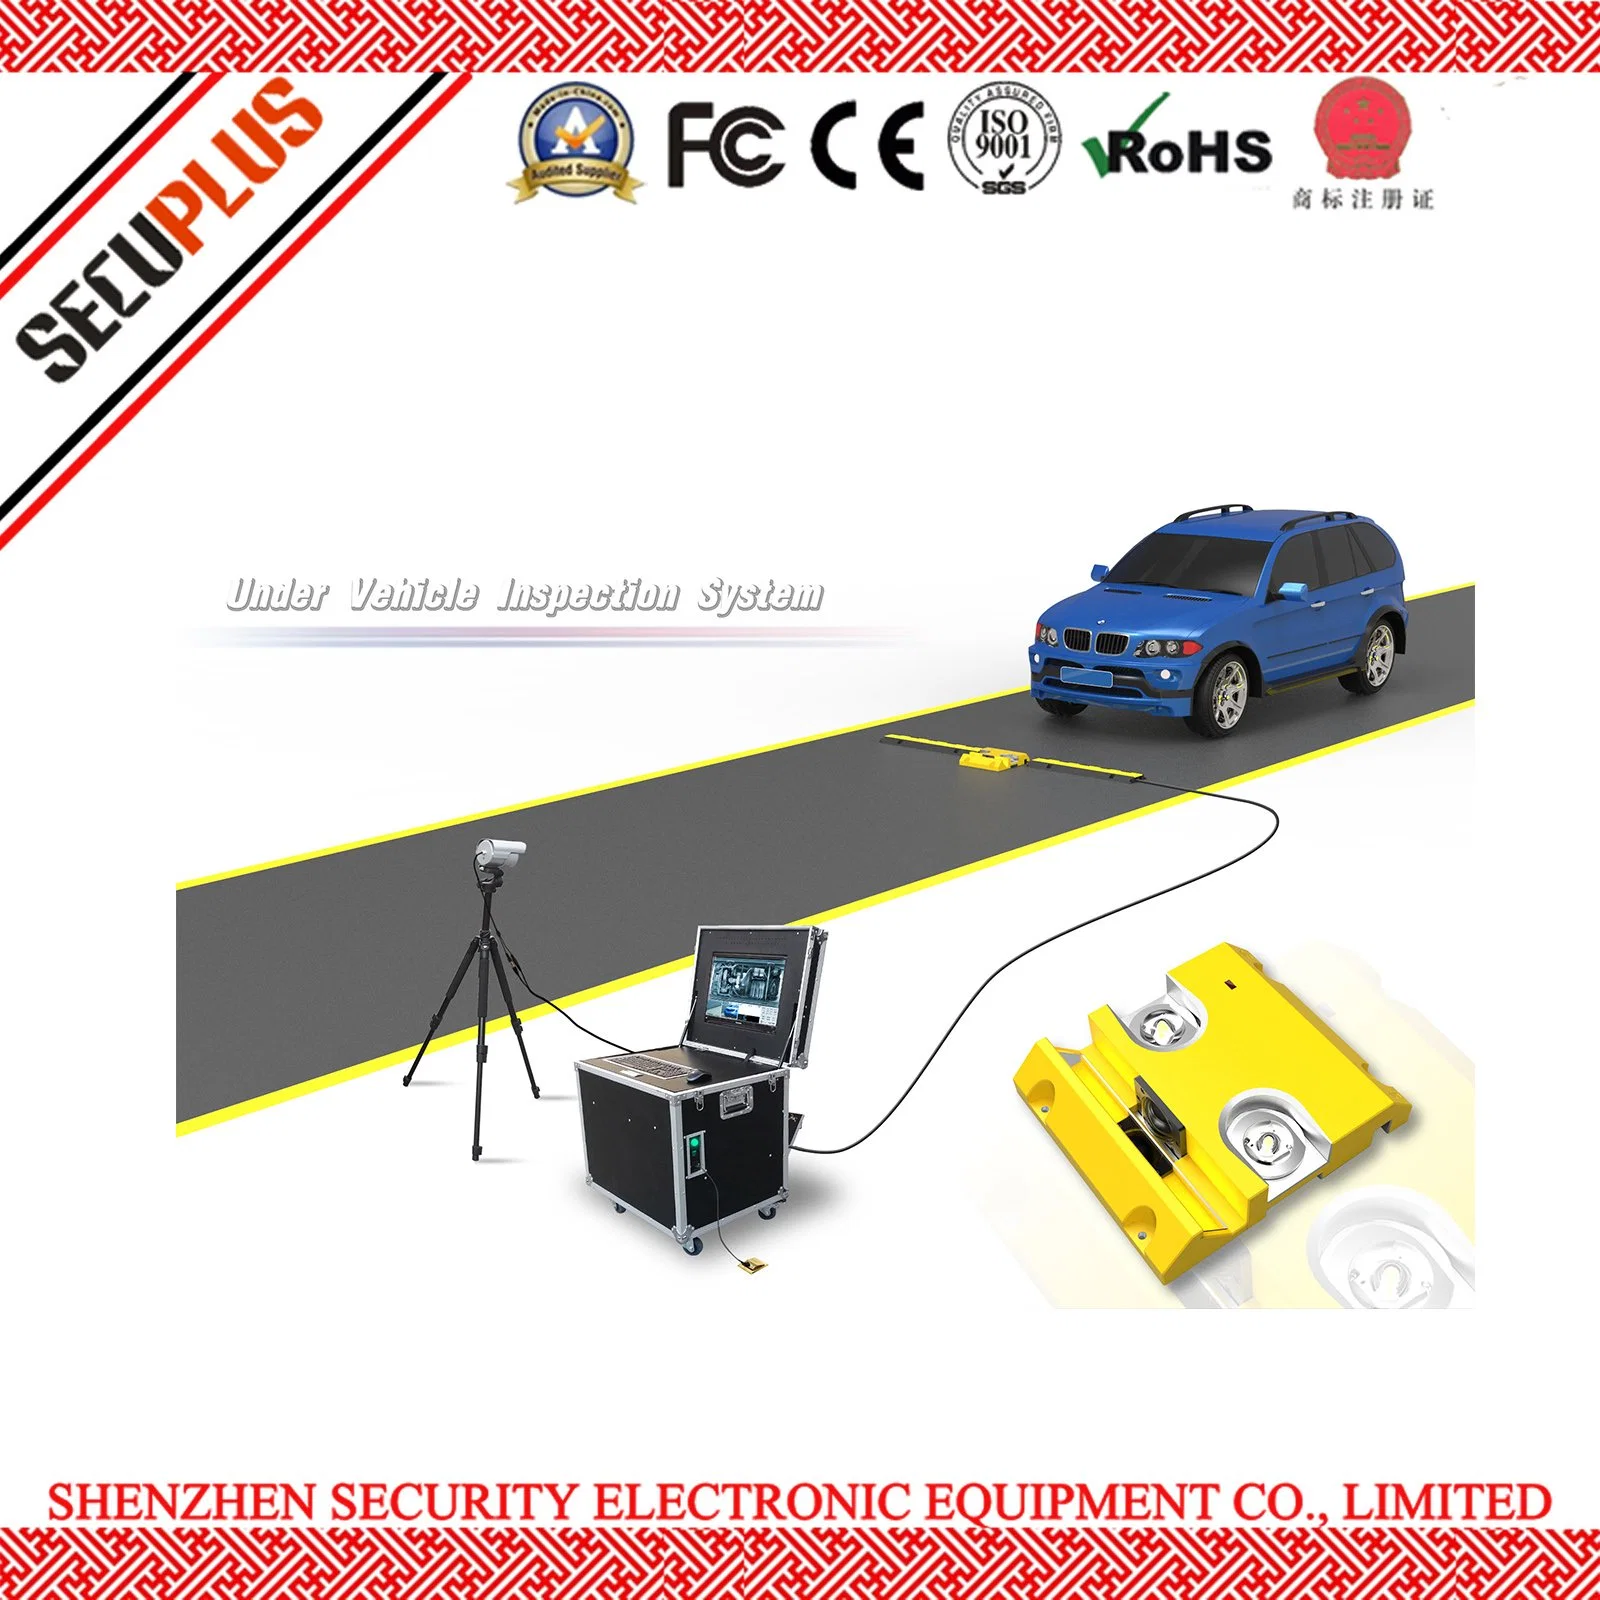 Tragbares Überwachungssystem für die Fahrzeuginspektion zur Fahrzeugsicherheit Überprüfung